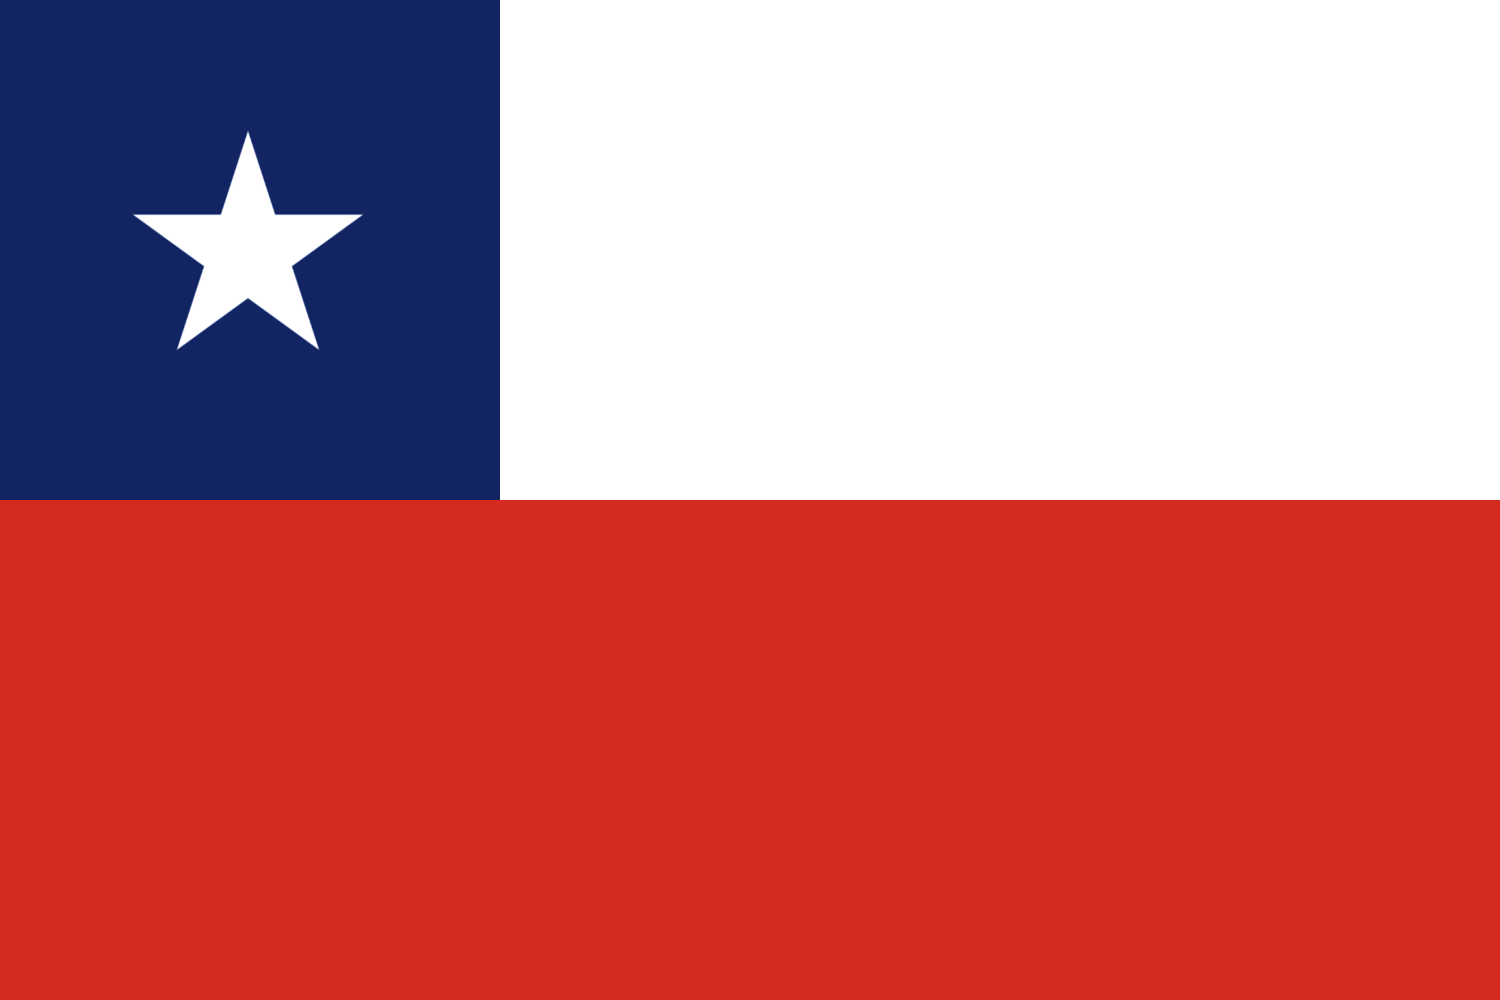 Chile zászlaja